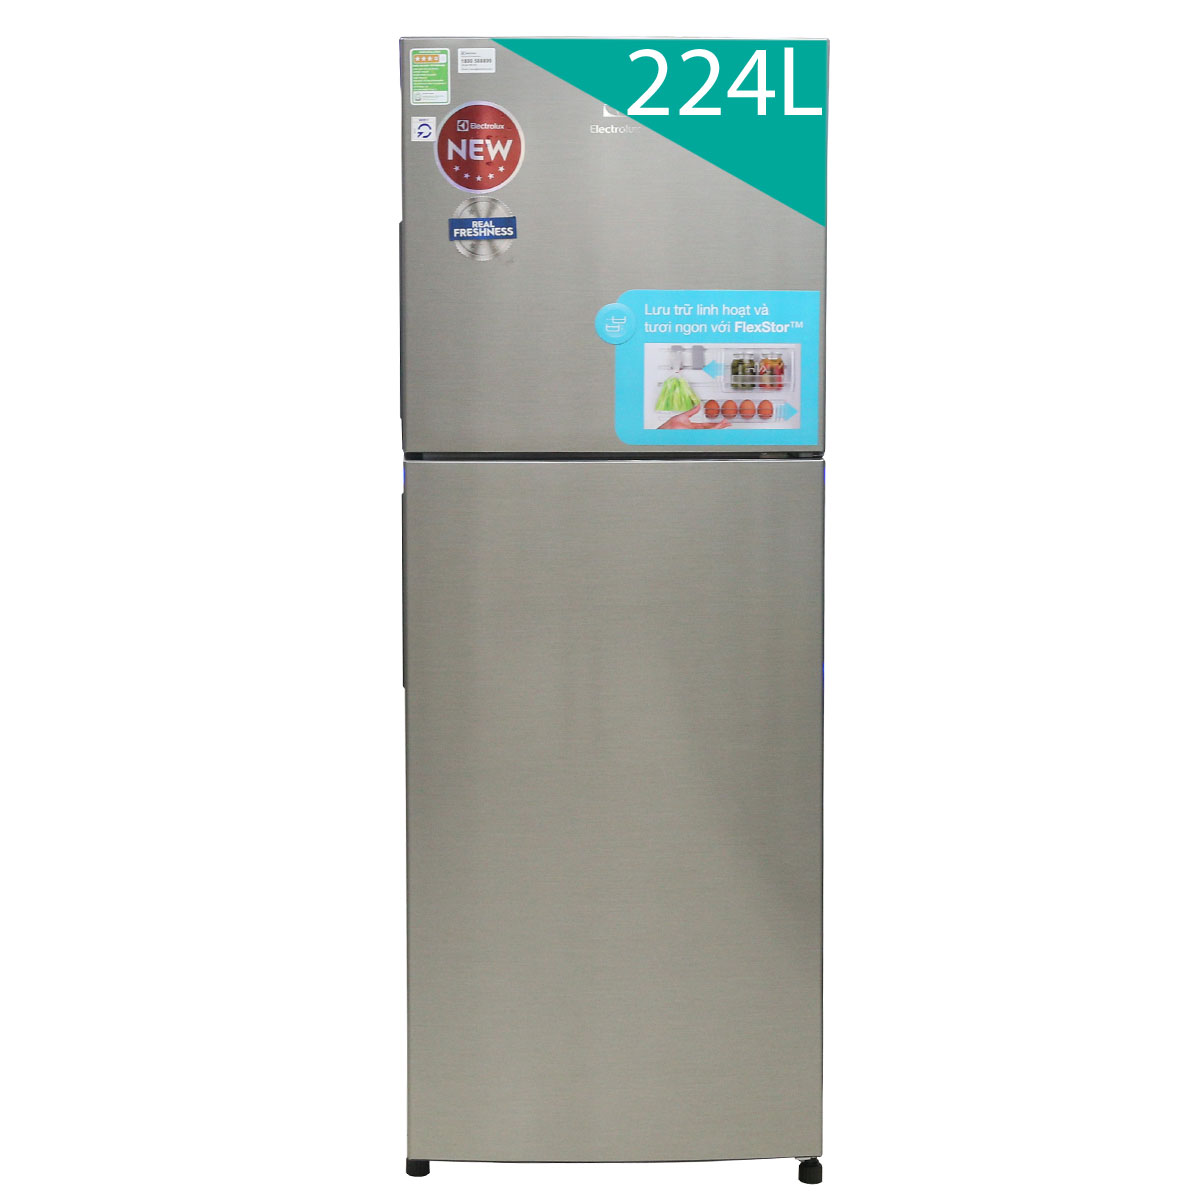  Tủ lạnh Electrolux ETB2302MG 224 lít- Chính hãng 